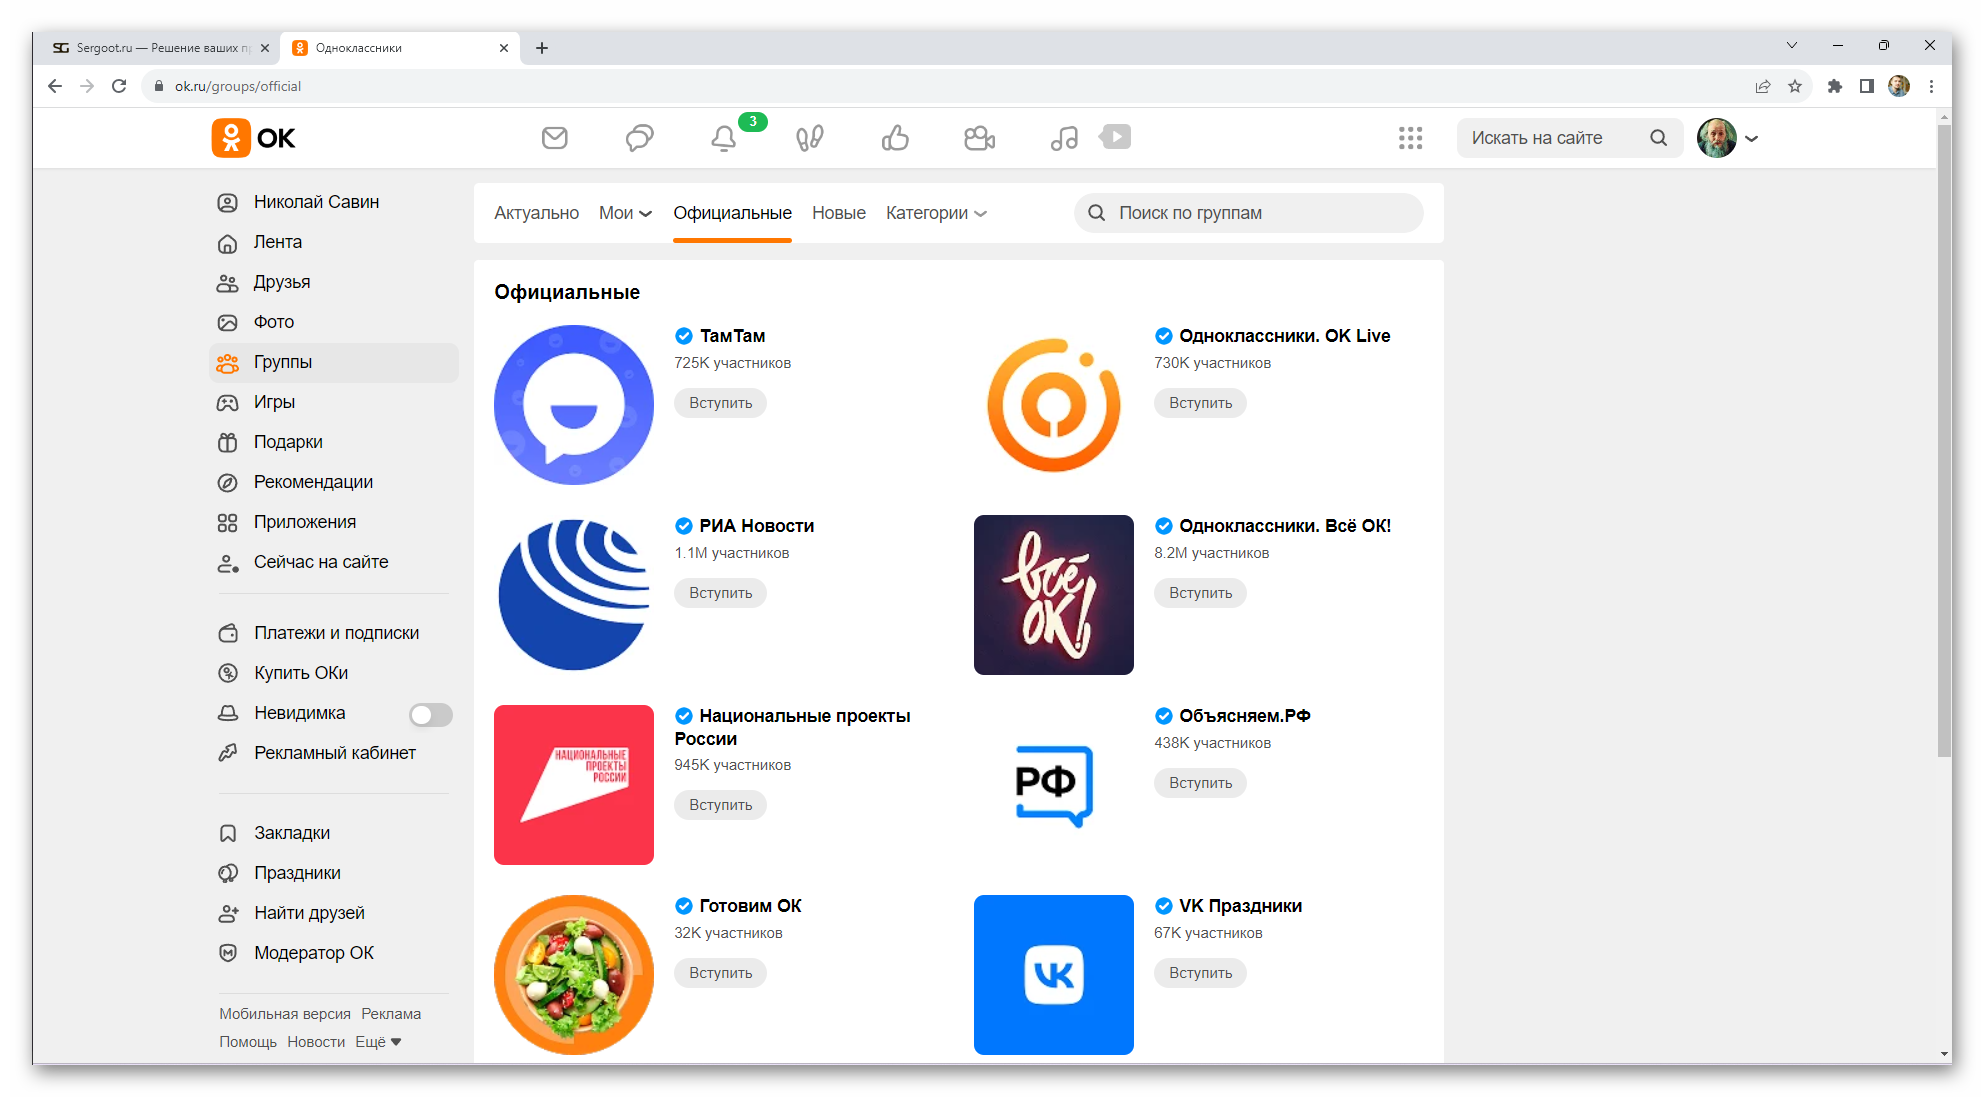 Новые сообщества на сайте Одноклассники